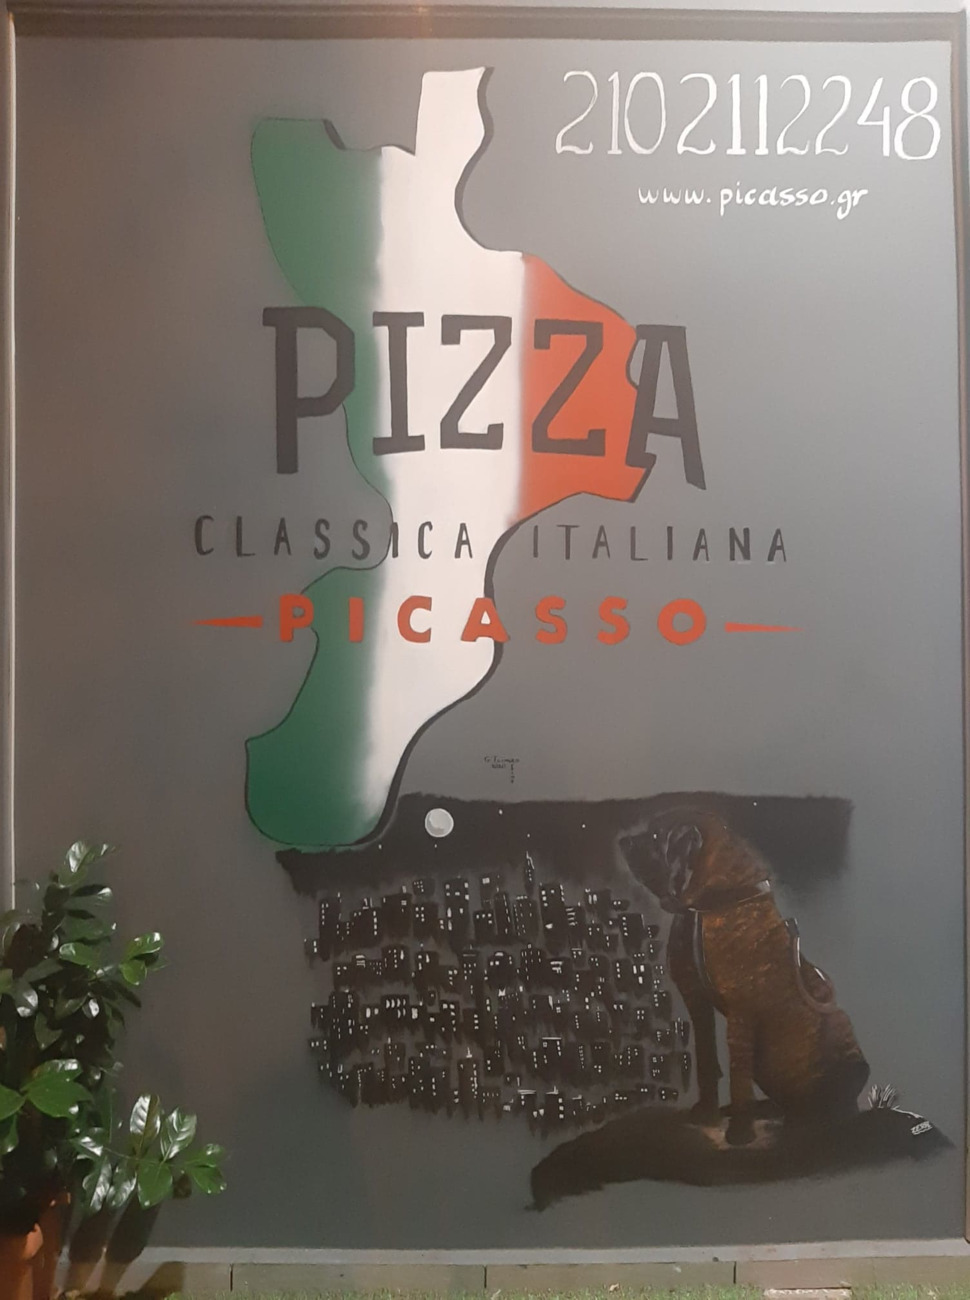   Pizza Picasso